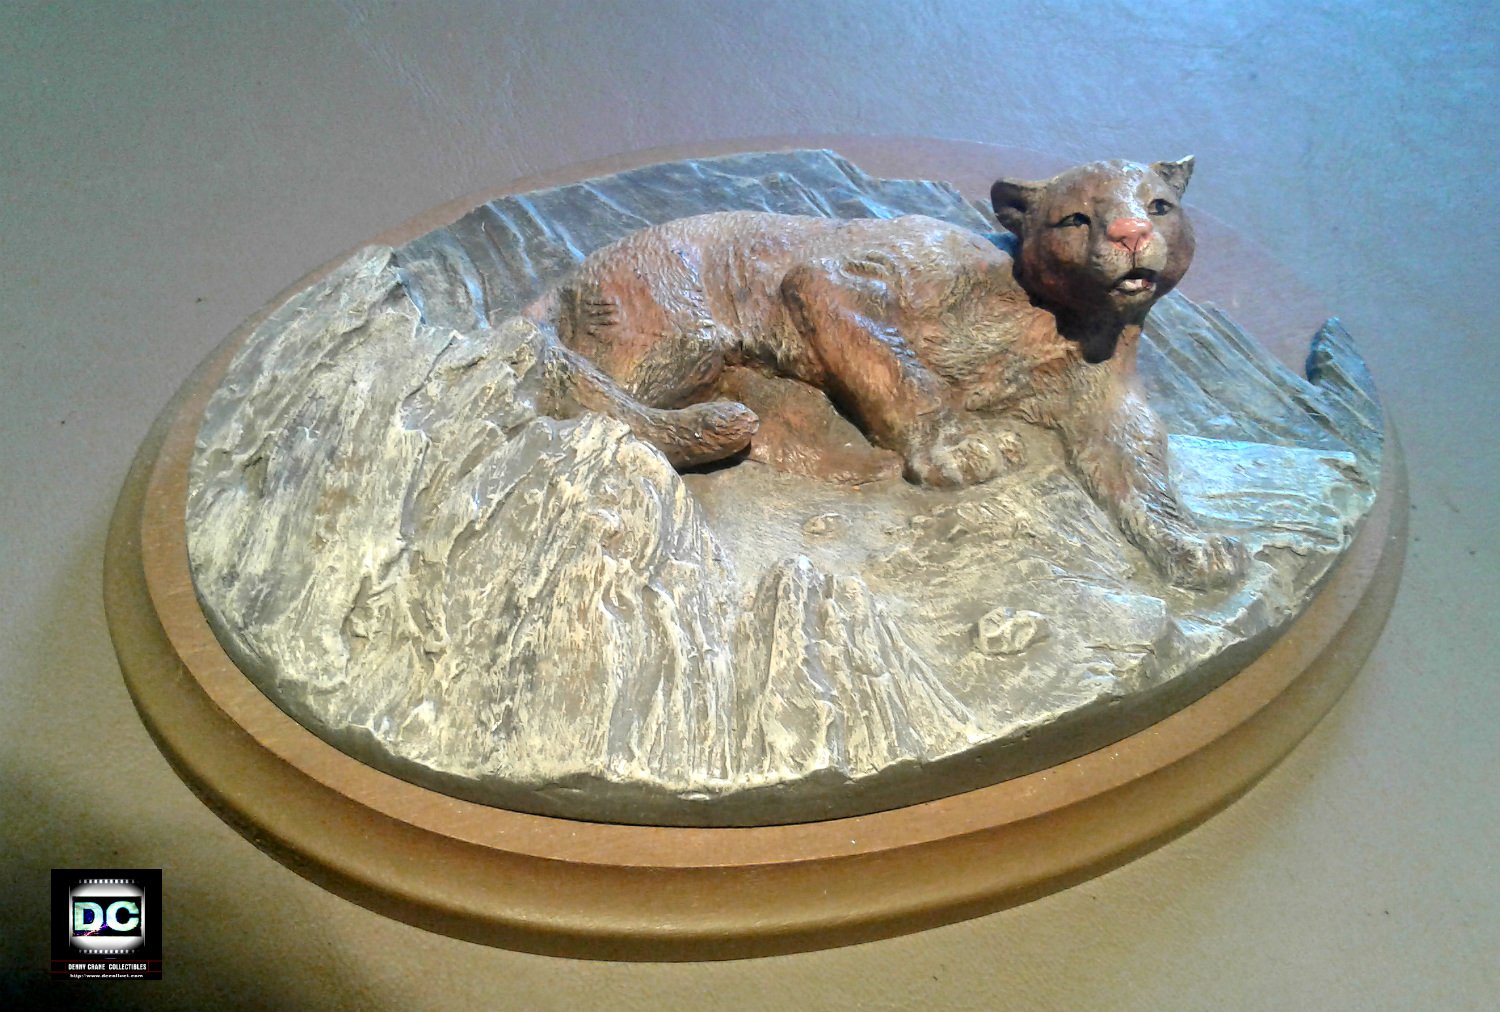 WWF American Wildlife Avon 3-D Plaque Ceramic Resin Figurine: Cougar/Puma/Mountain Lion/Wild Cat